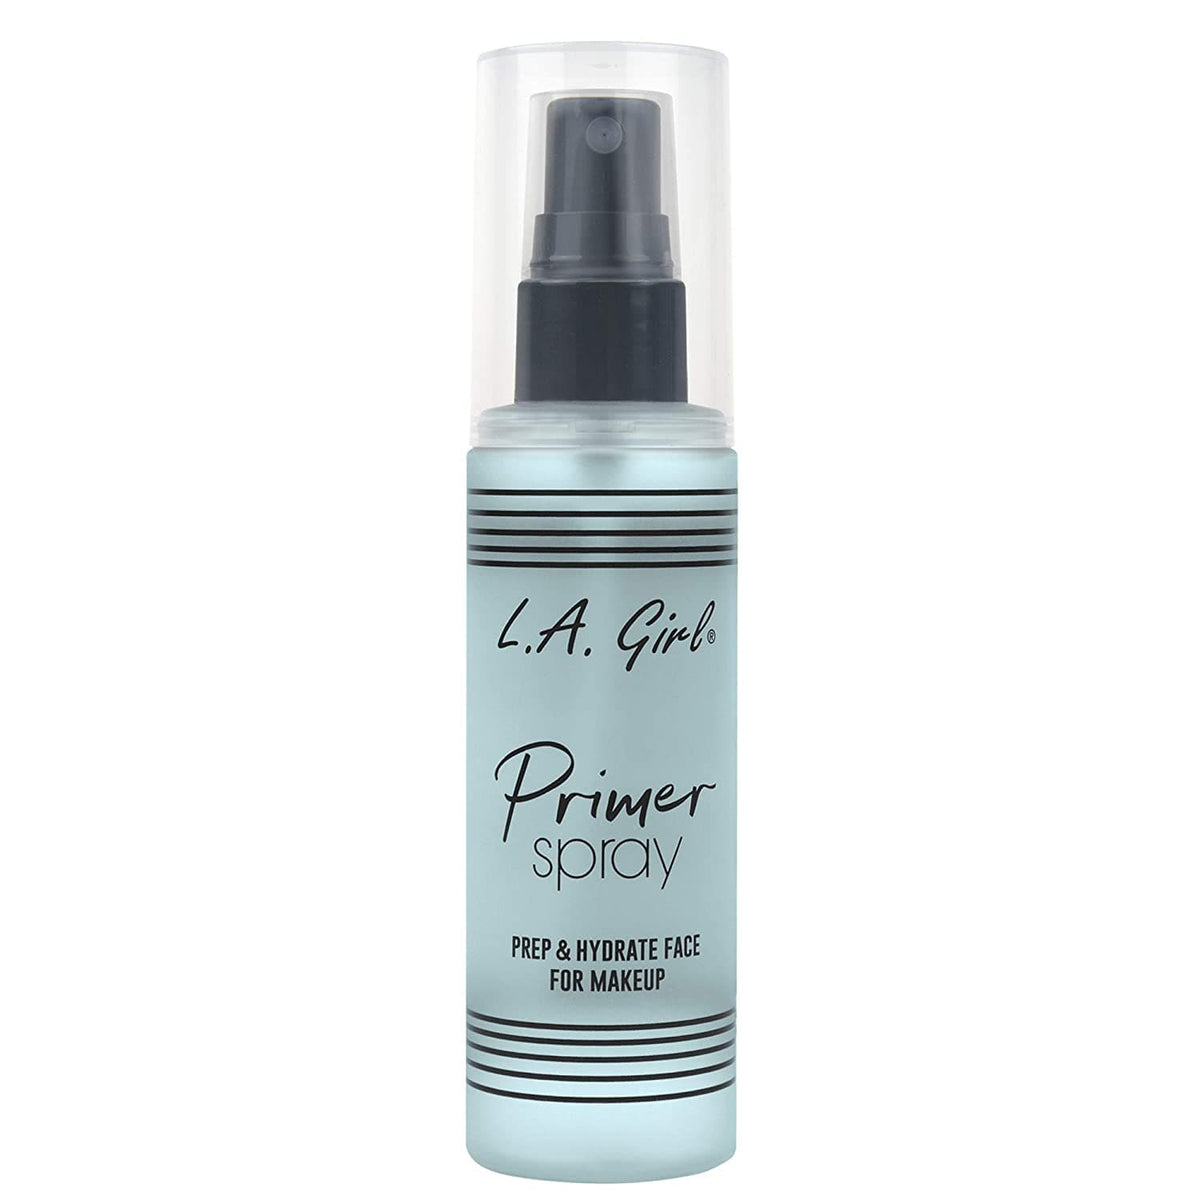 LA Girl Primer Spray Prep & Hydrate - 80ml - Premium Face Primer from LA Girl - Just Rs 3726! Shop now at Cozmetica